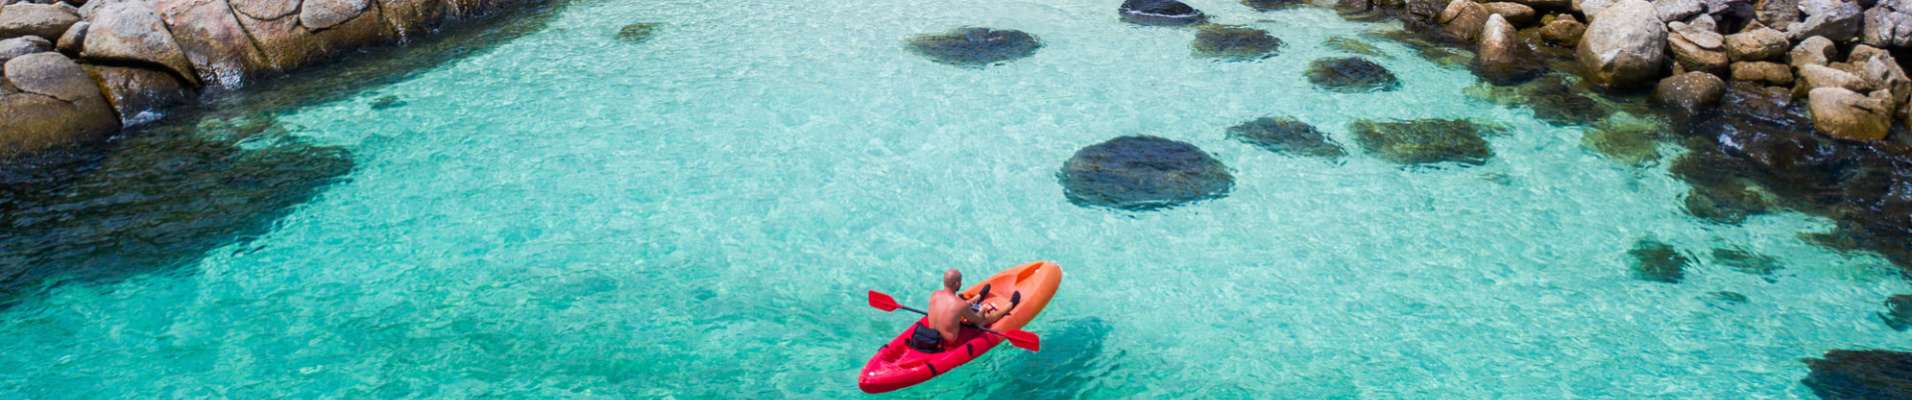 Kayak et eau turquoise en Thaïlande